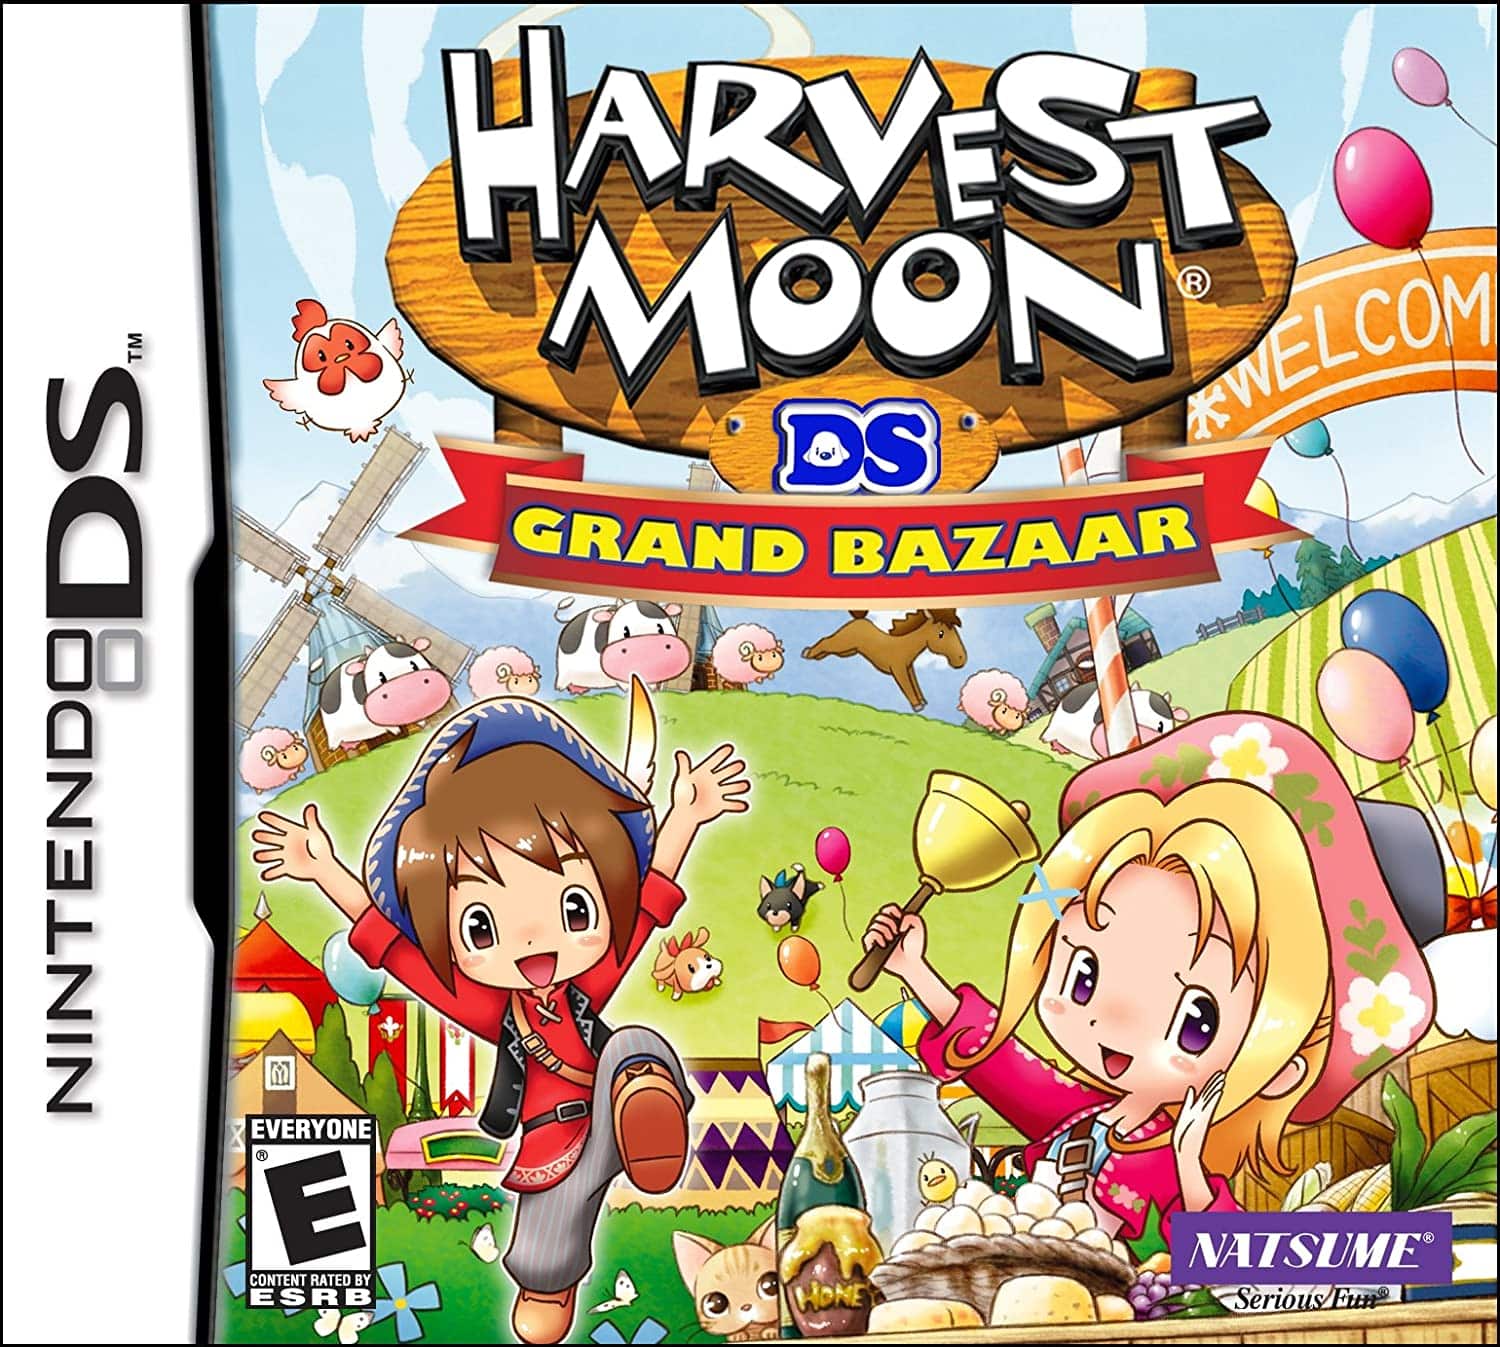 Harvest Moon DS: Grand Bazaar player count stats